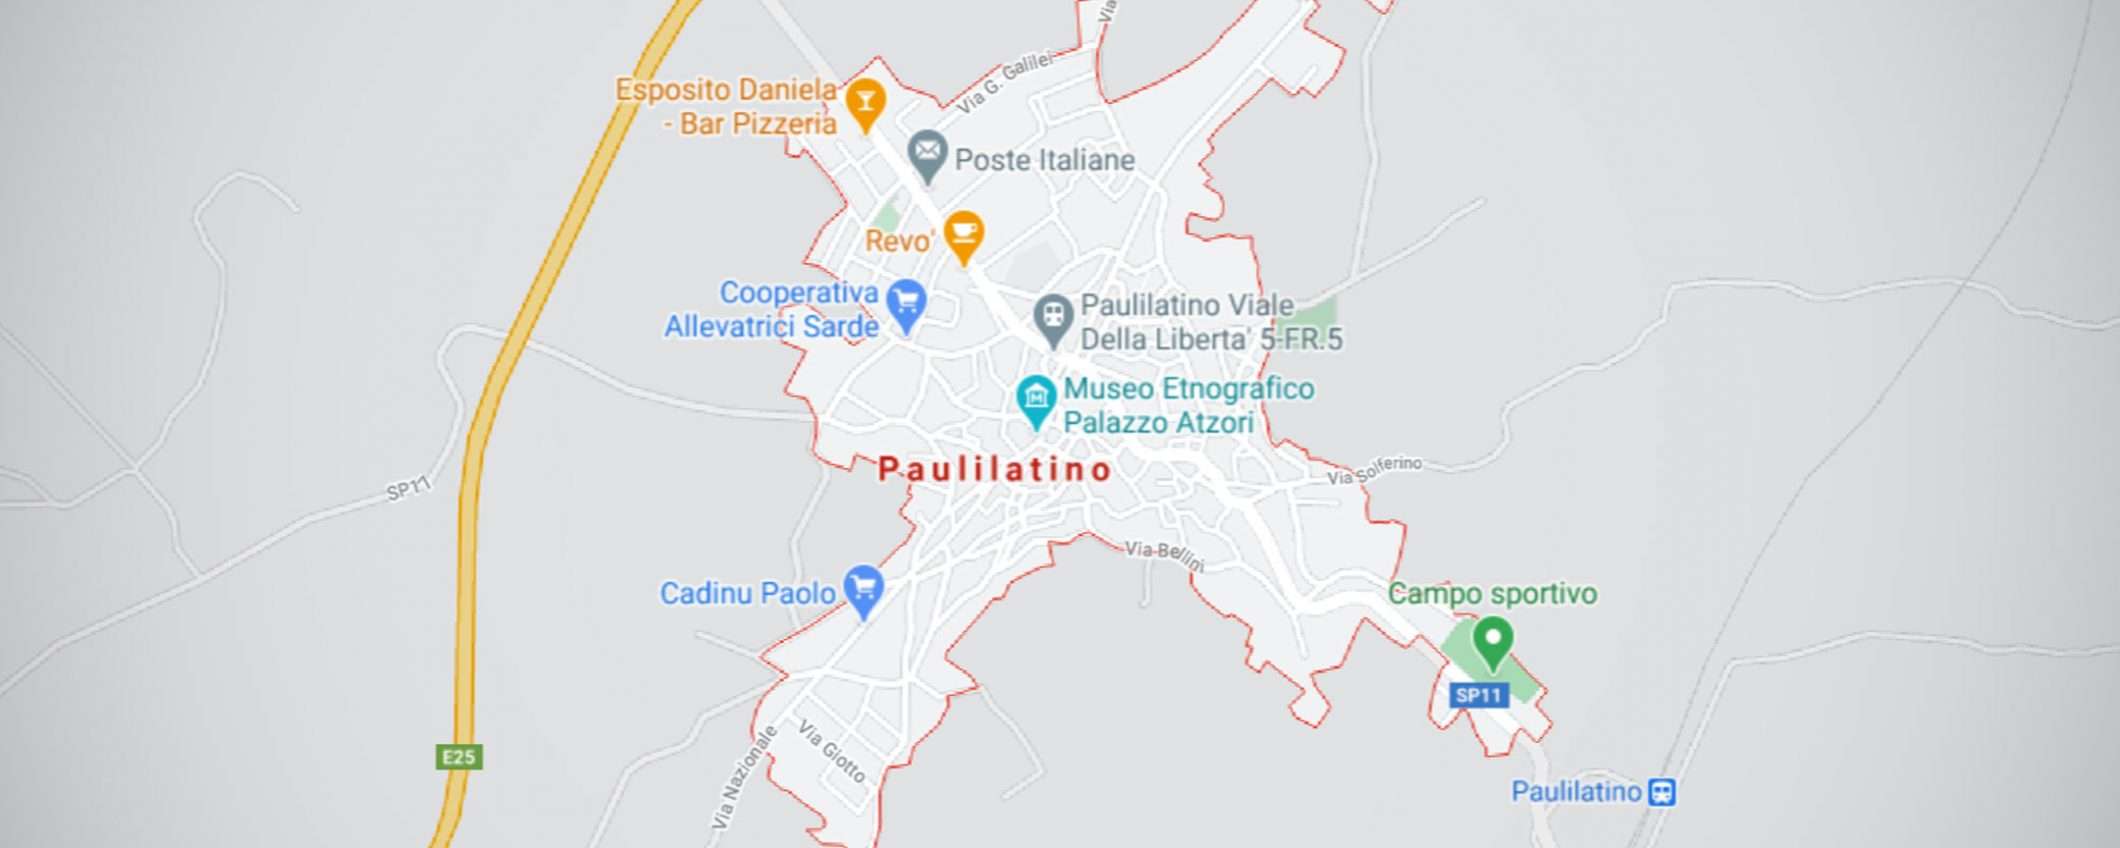 Paulilatino e #GoogleDown: Pi scrive Fake News?